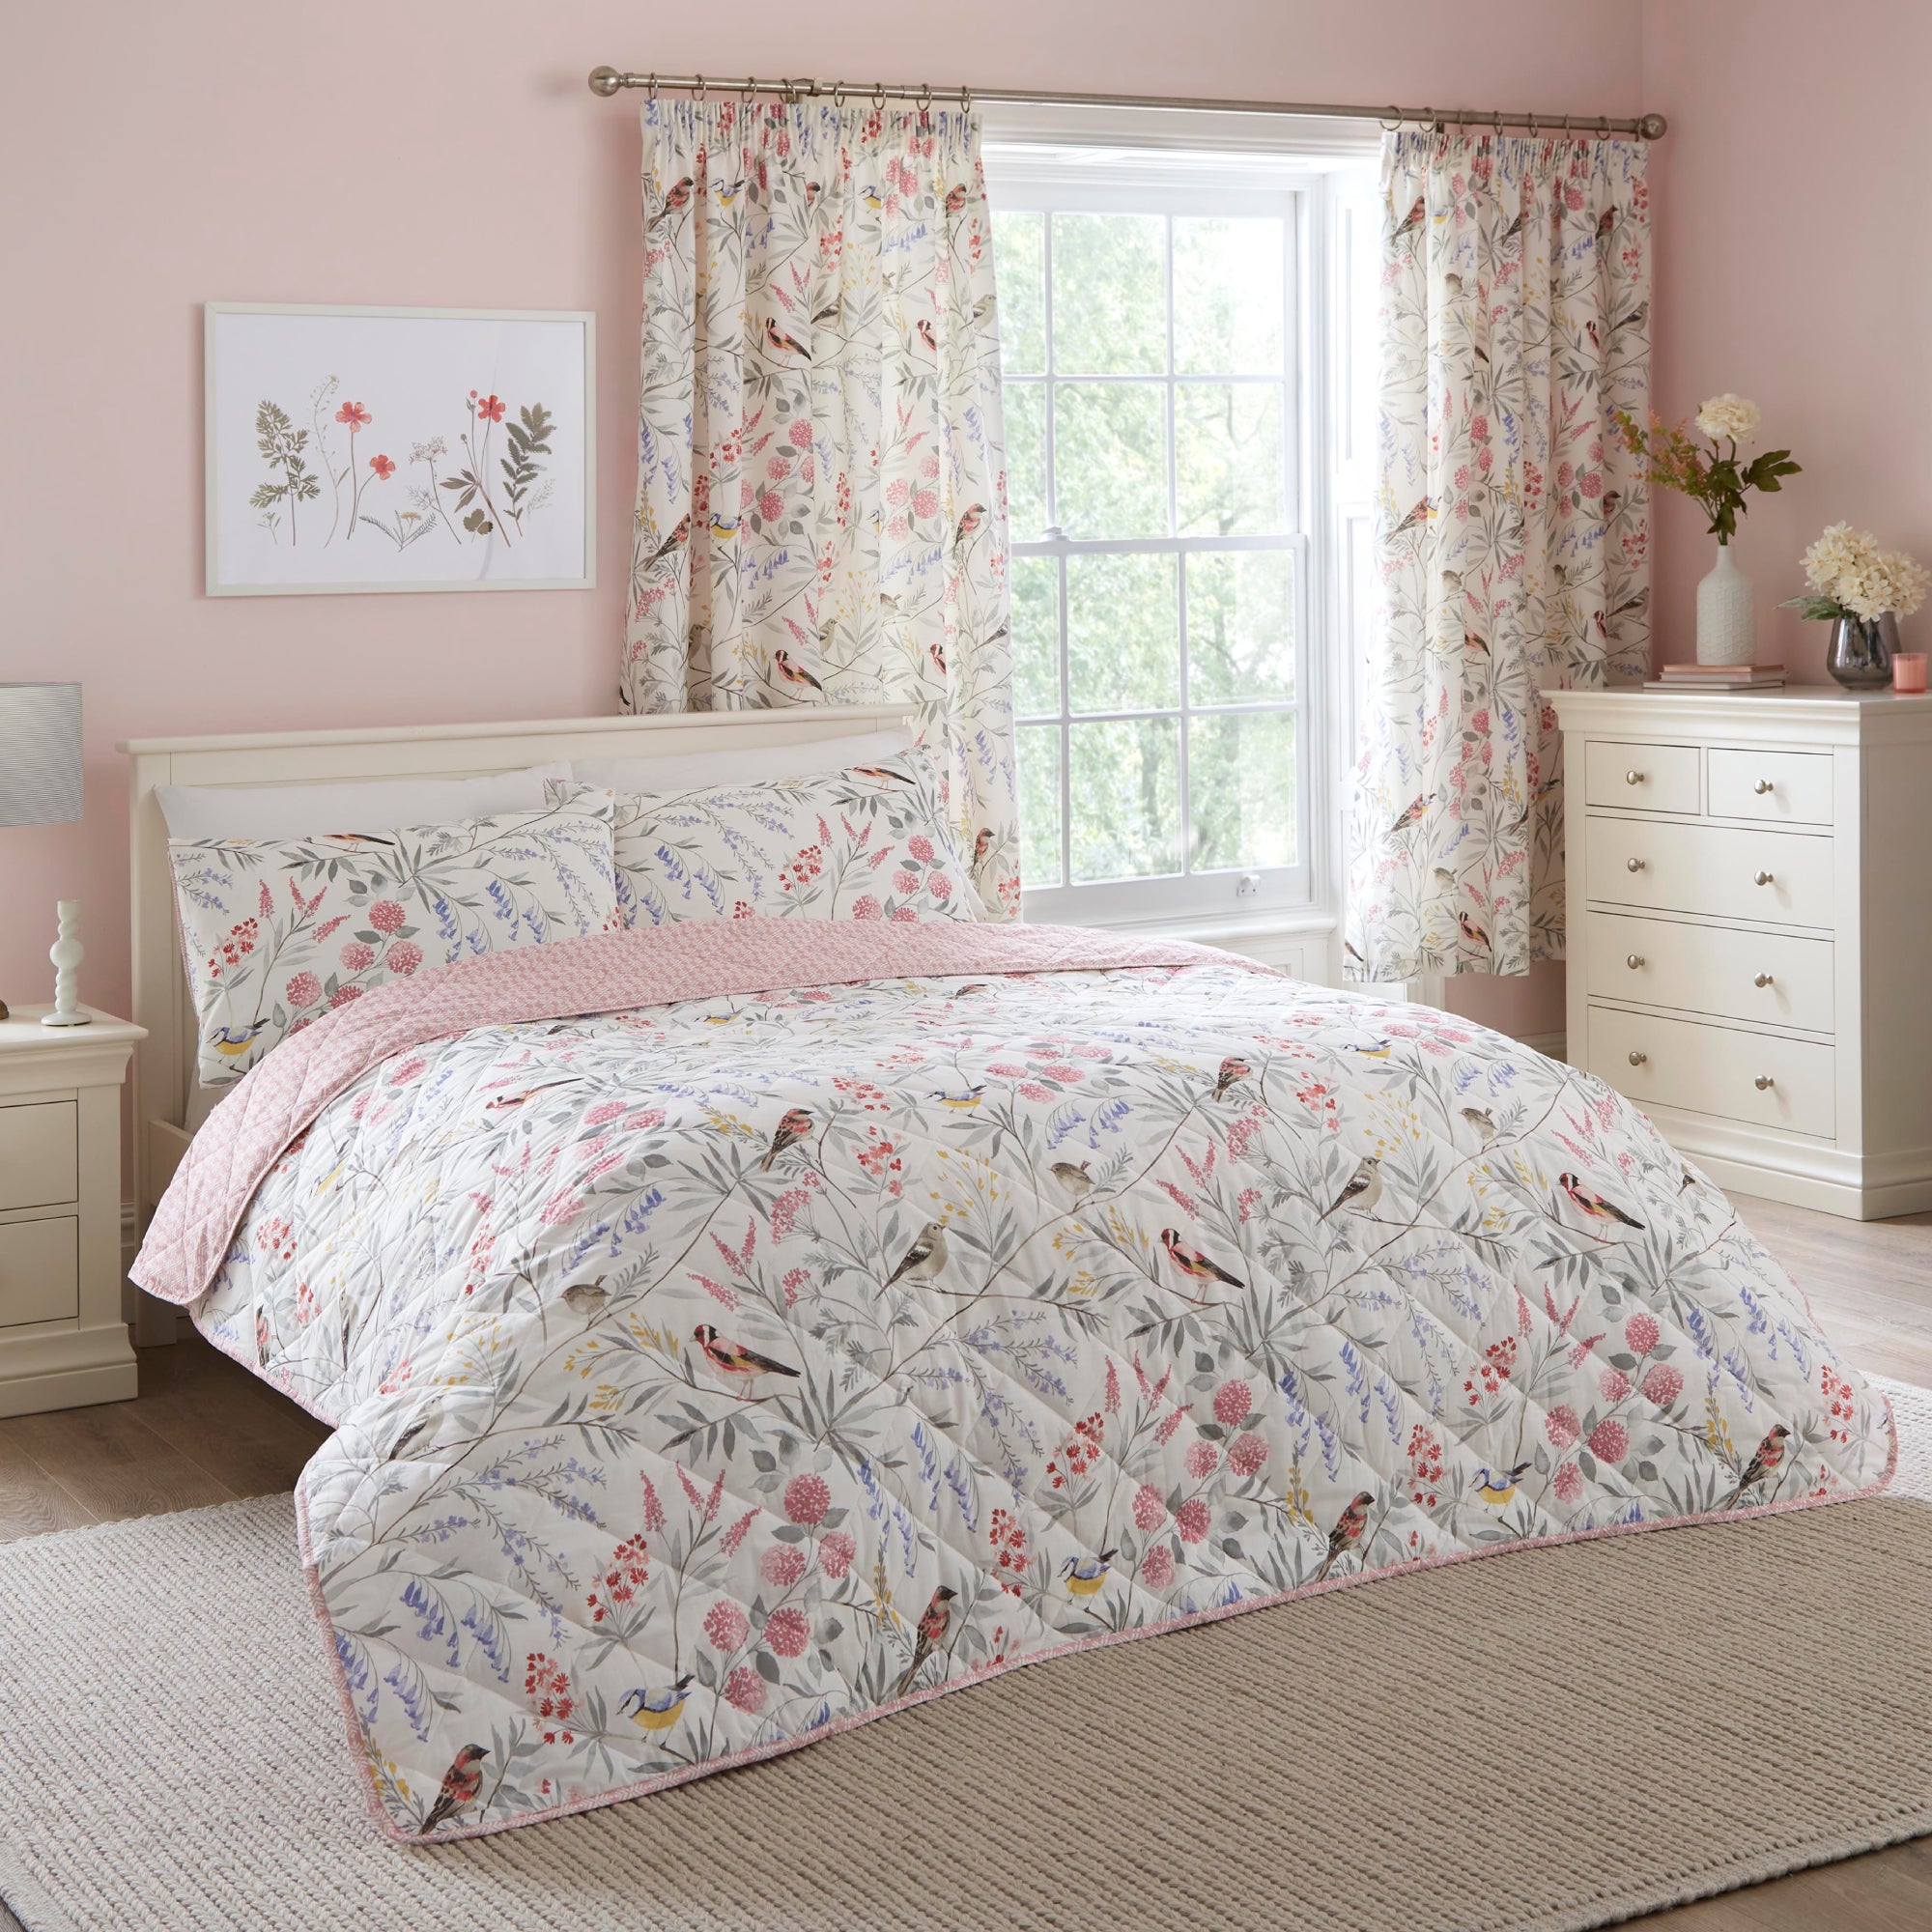 Bedspread Caraway by Dreams & Drapes Design in Pink